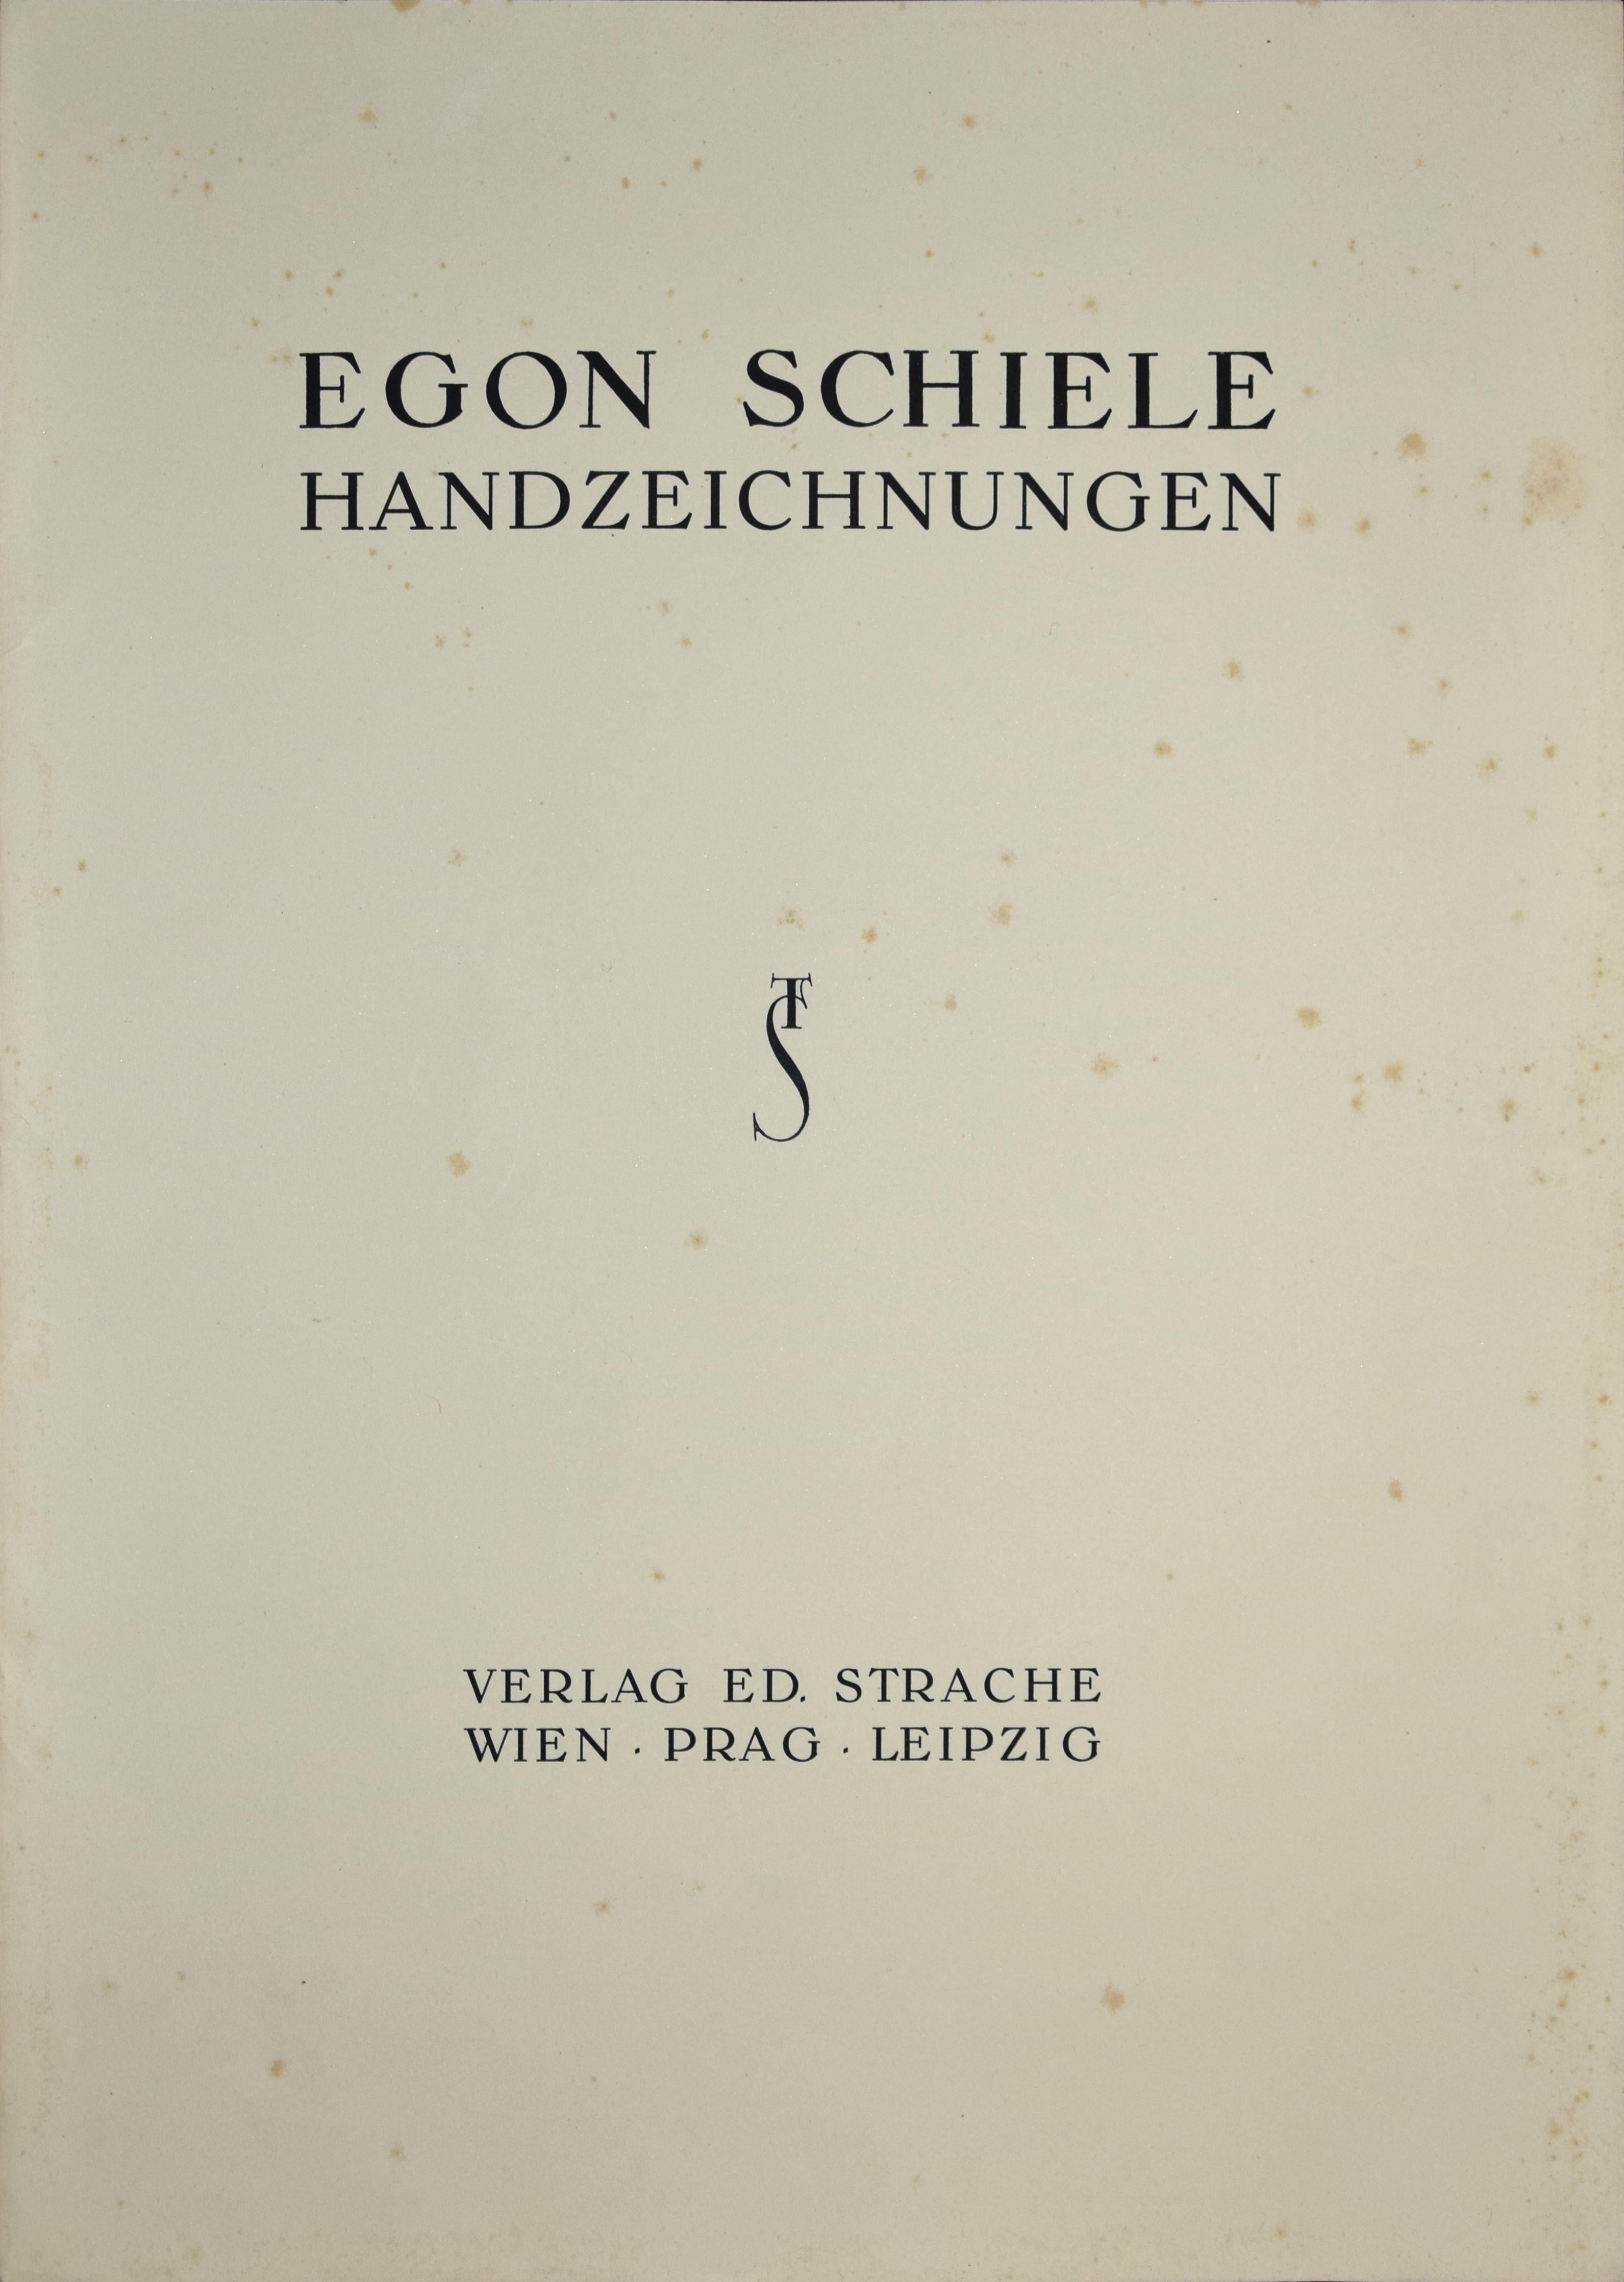 Femme nue -  Impression Collotype d'après Egon Schiele- 1920 - Expressionniste Print par (after) Egon Schiele